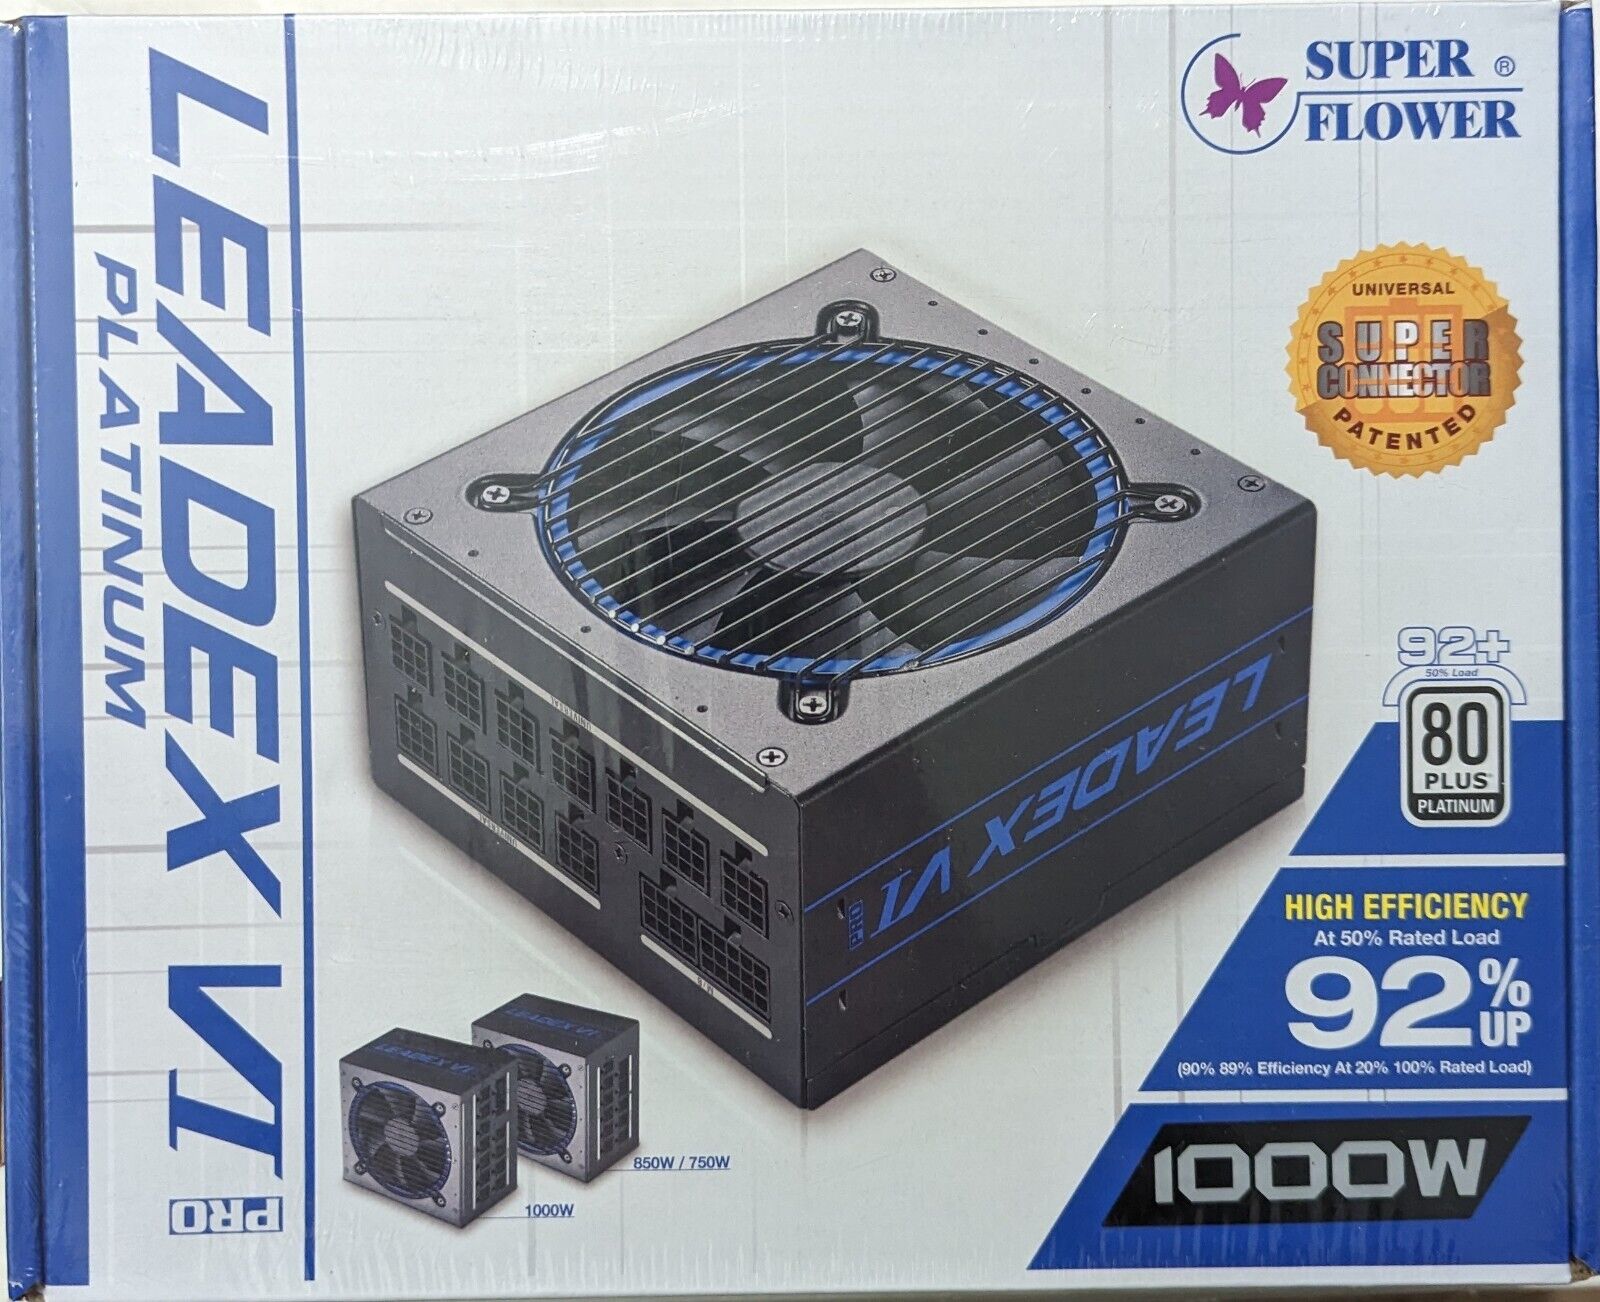 Super Flower Leadex VI Platinum PRO 1000W ATX 80 PLUS PLATINUM Certified Power